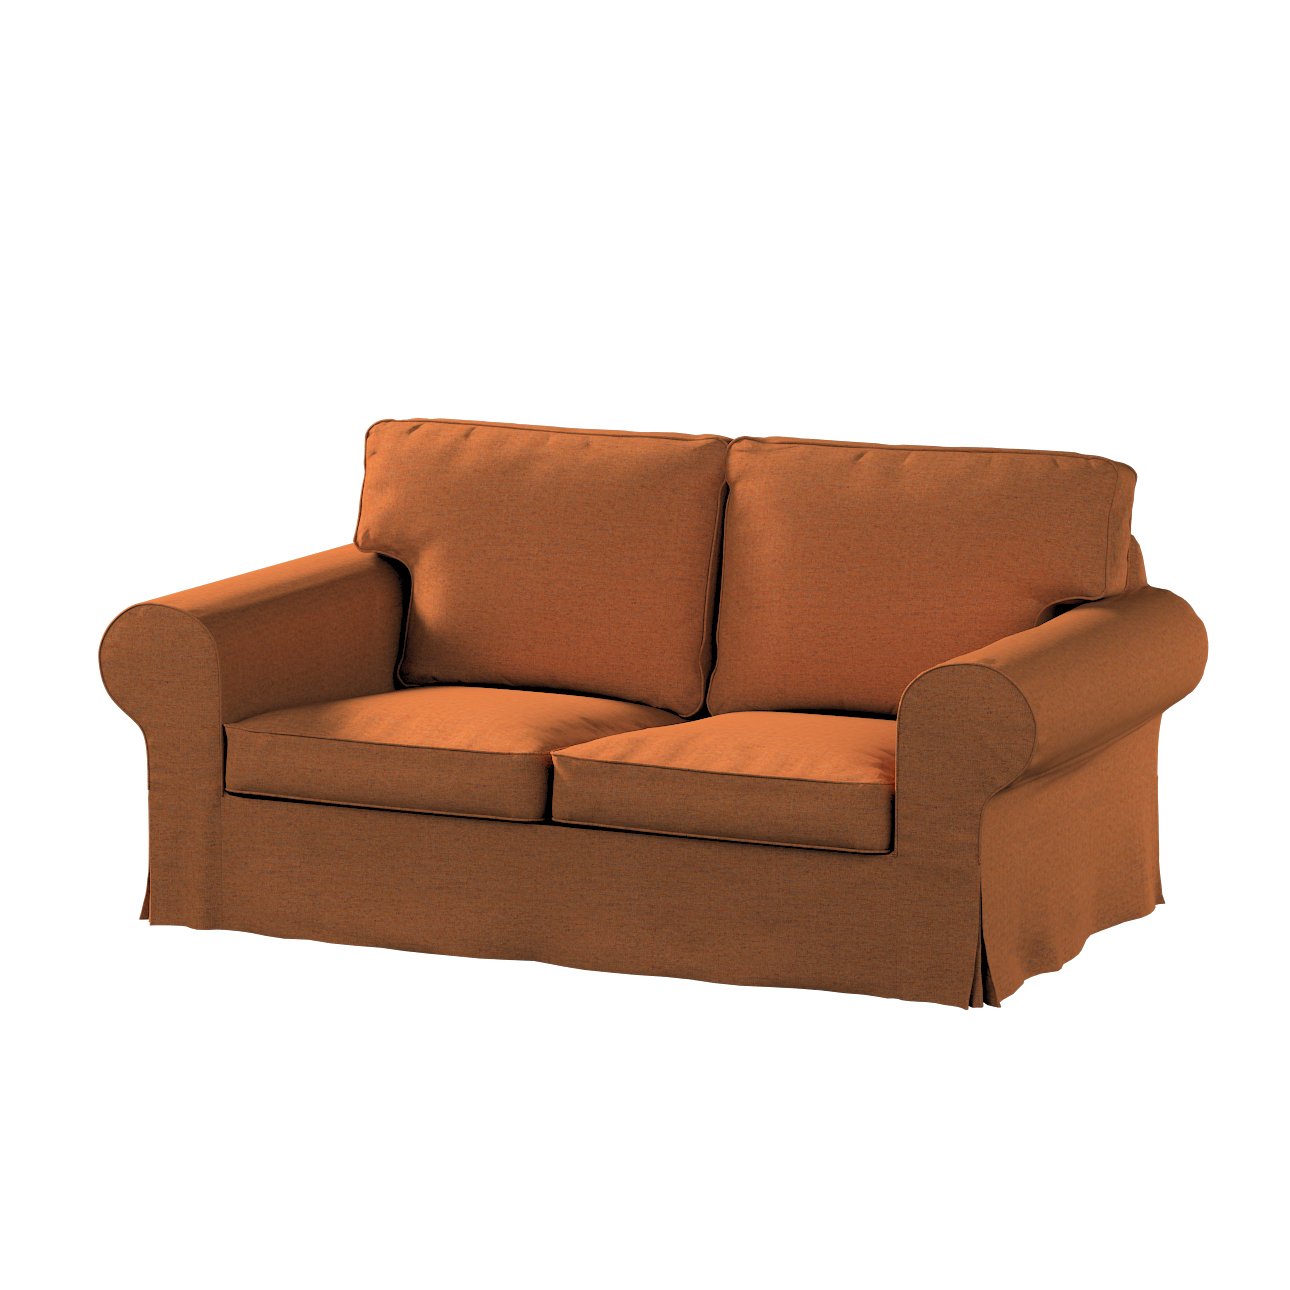 Bezug für Ektorp 2-Sitzer Schlafsofa NEUES Modell, orange, Sofabezug für  E günstig online kaufen